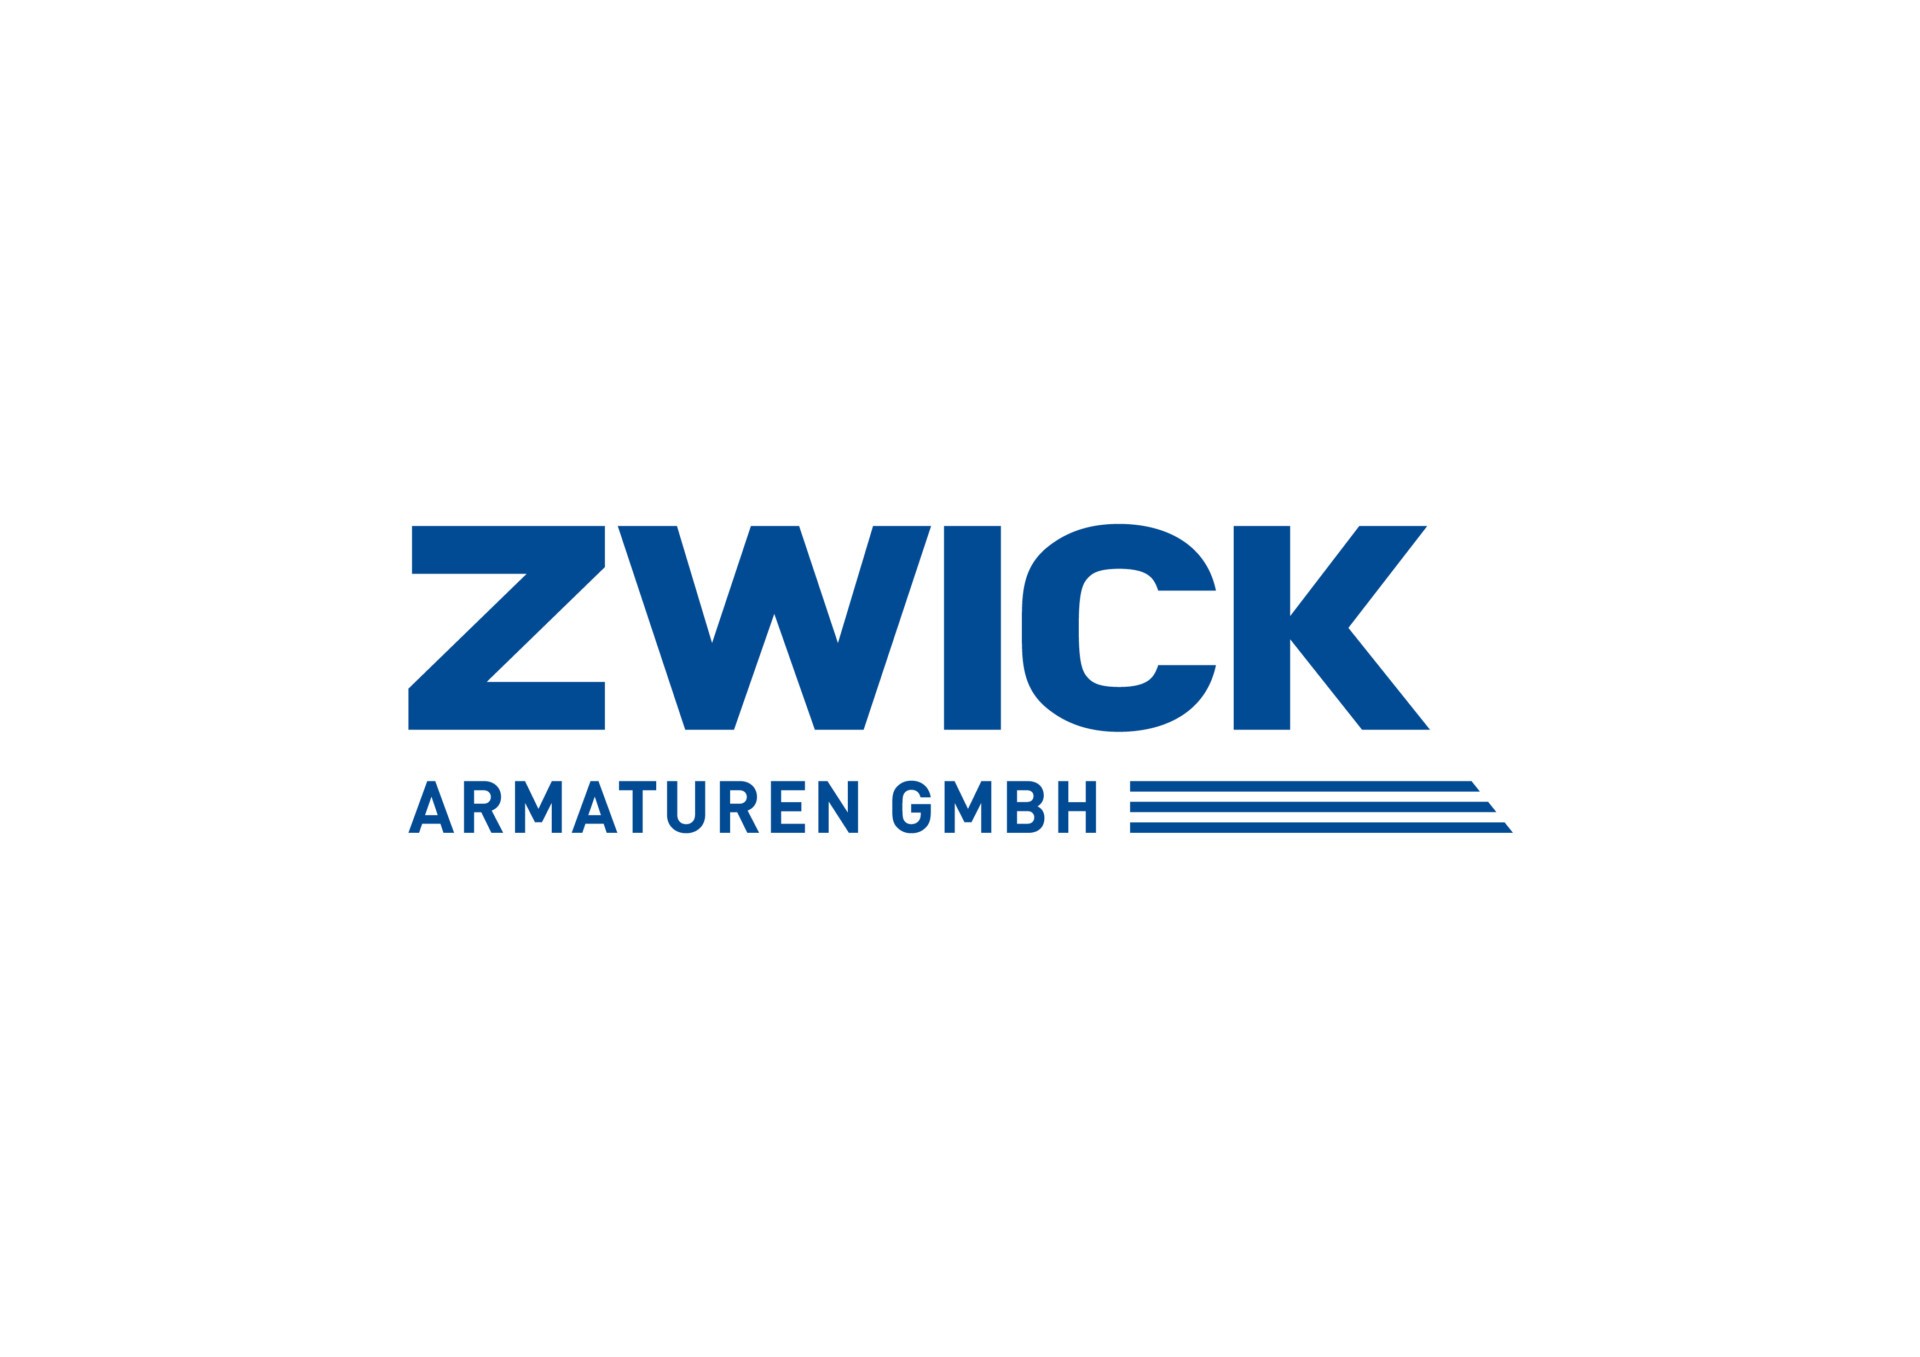 zwick_logo_v23